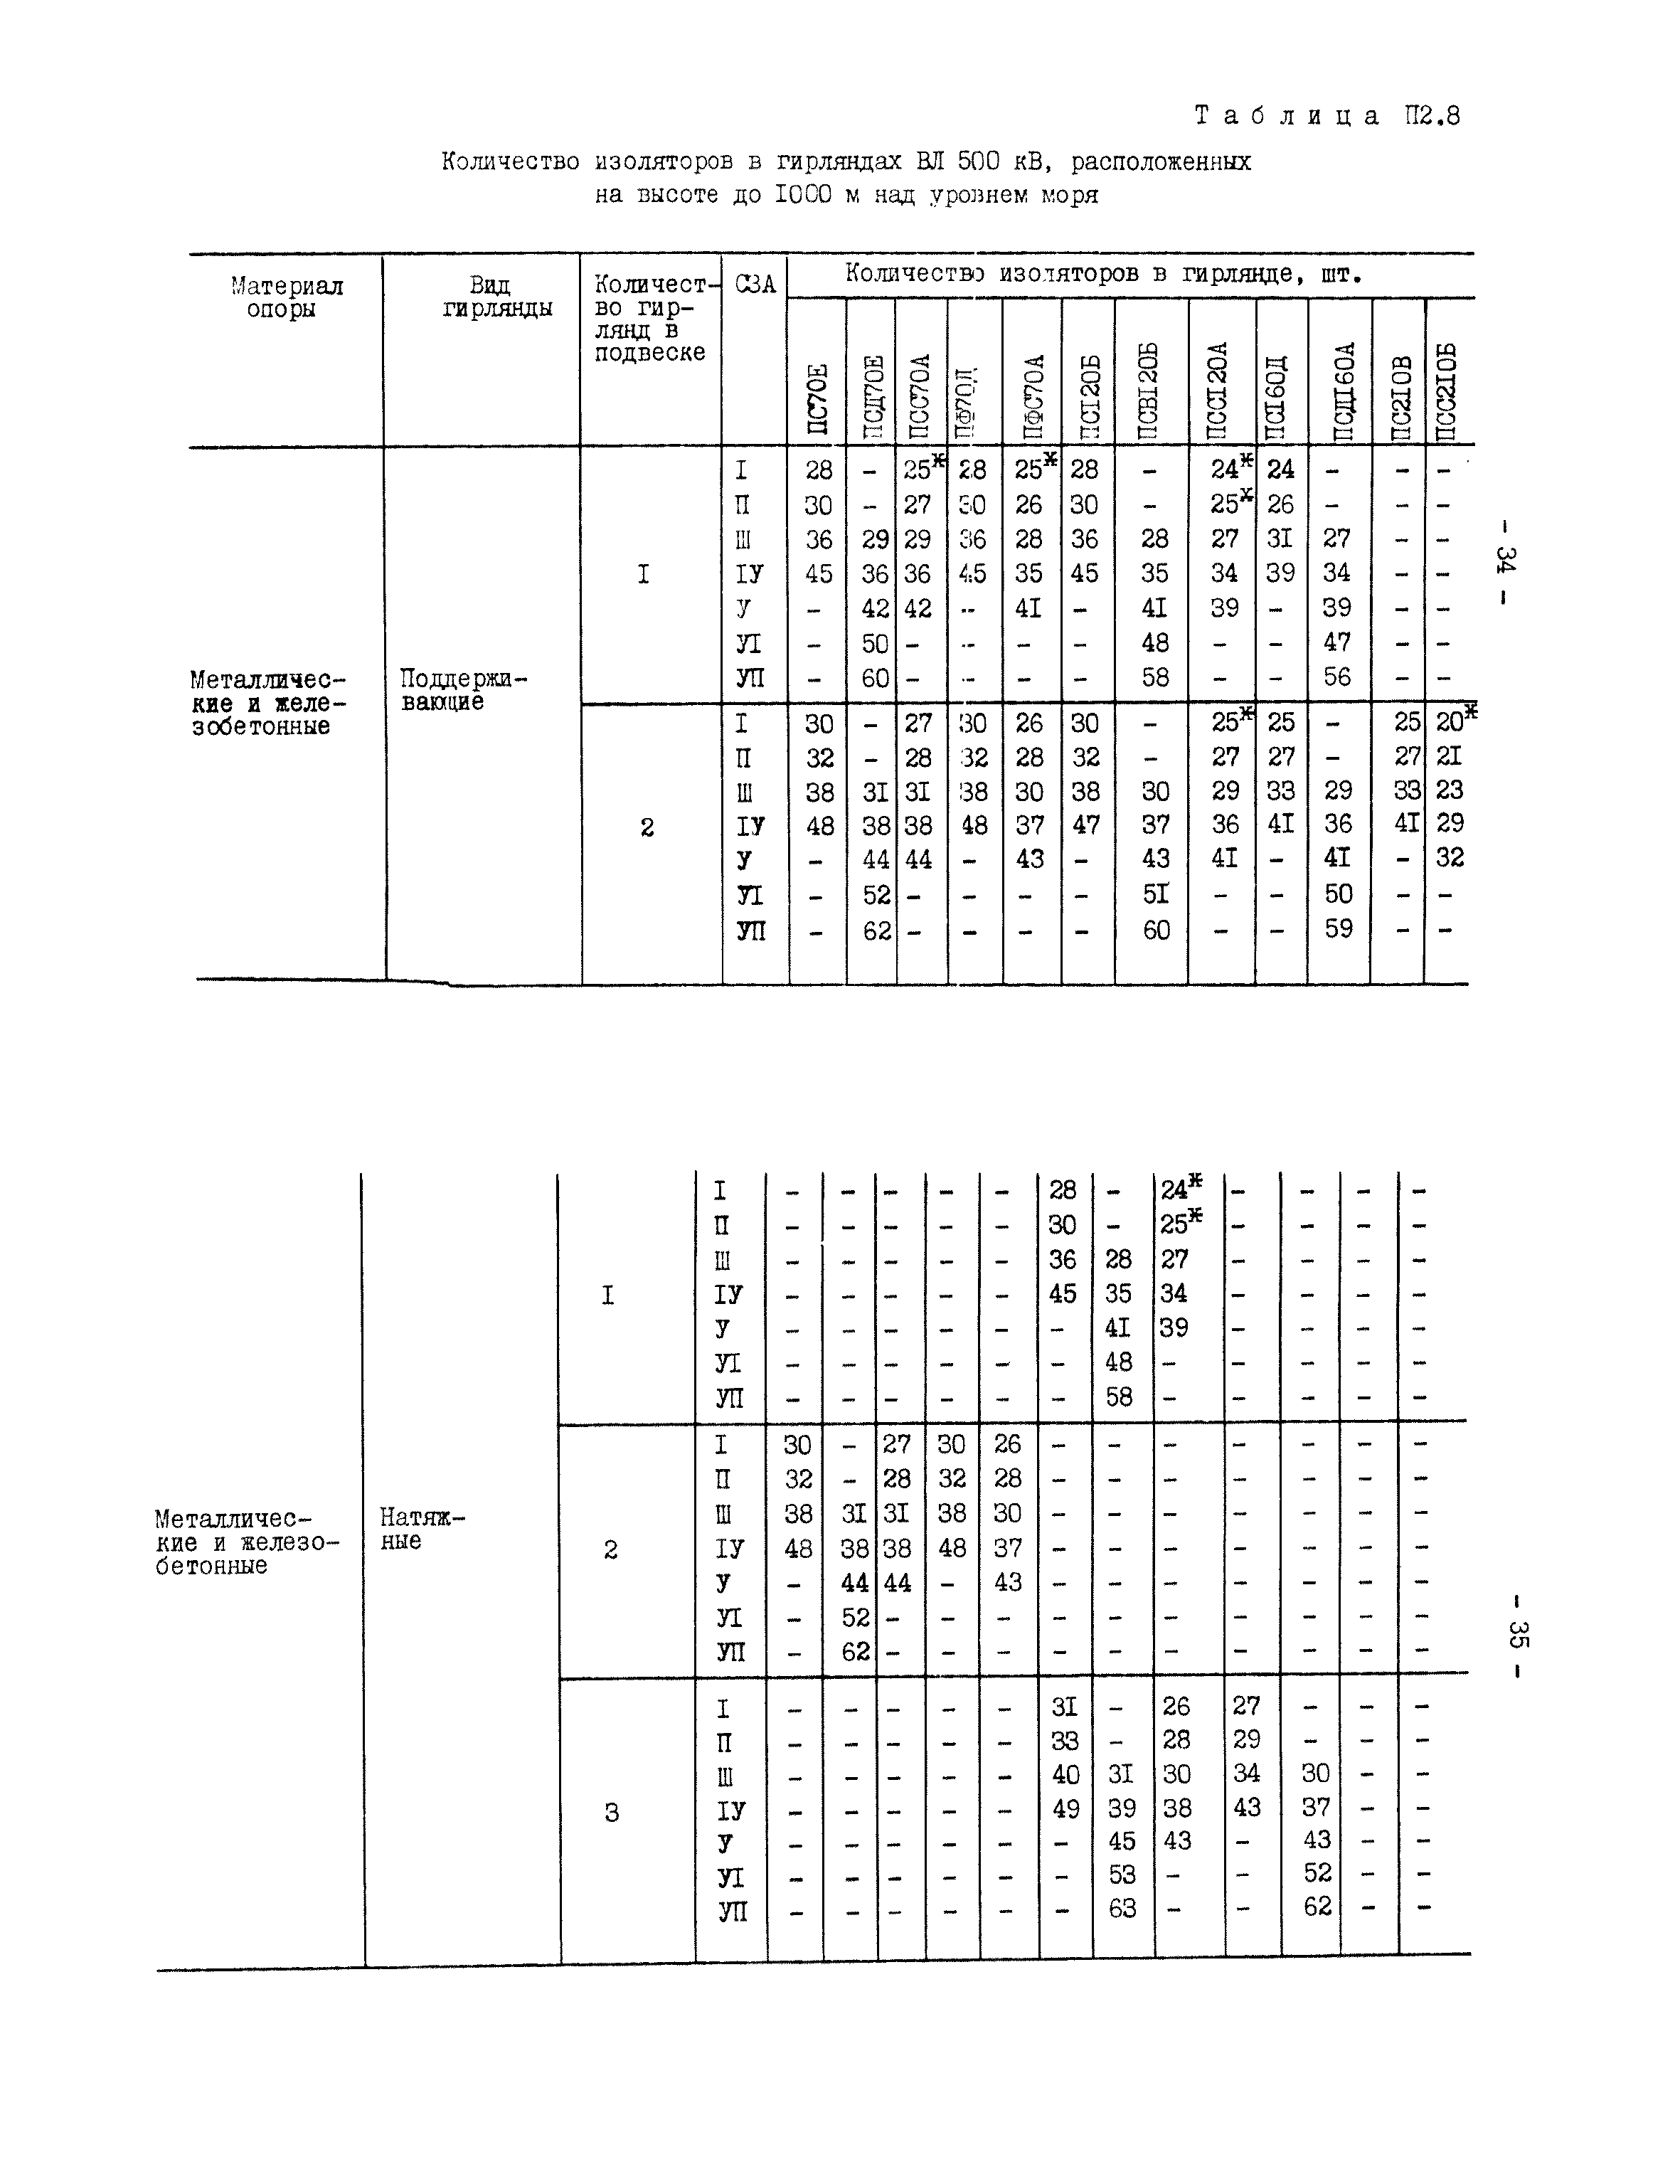 РД 34.51.101-90